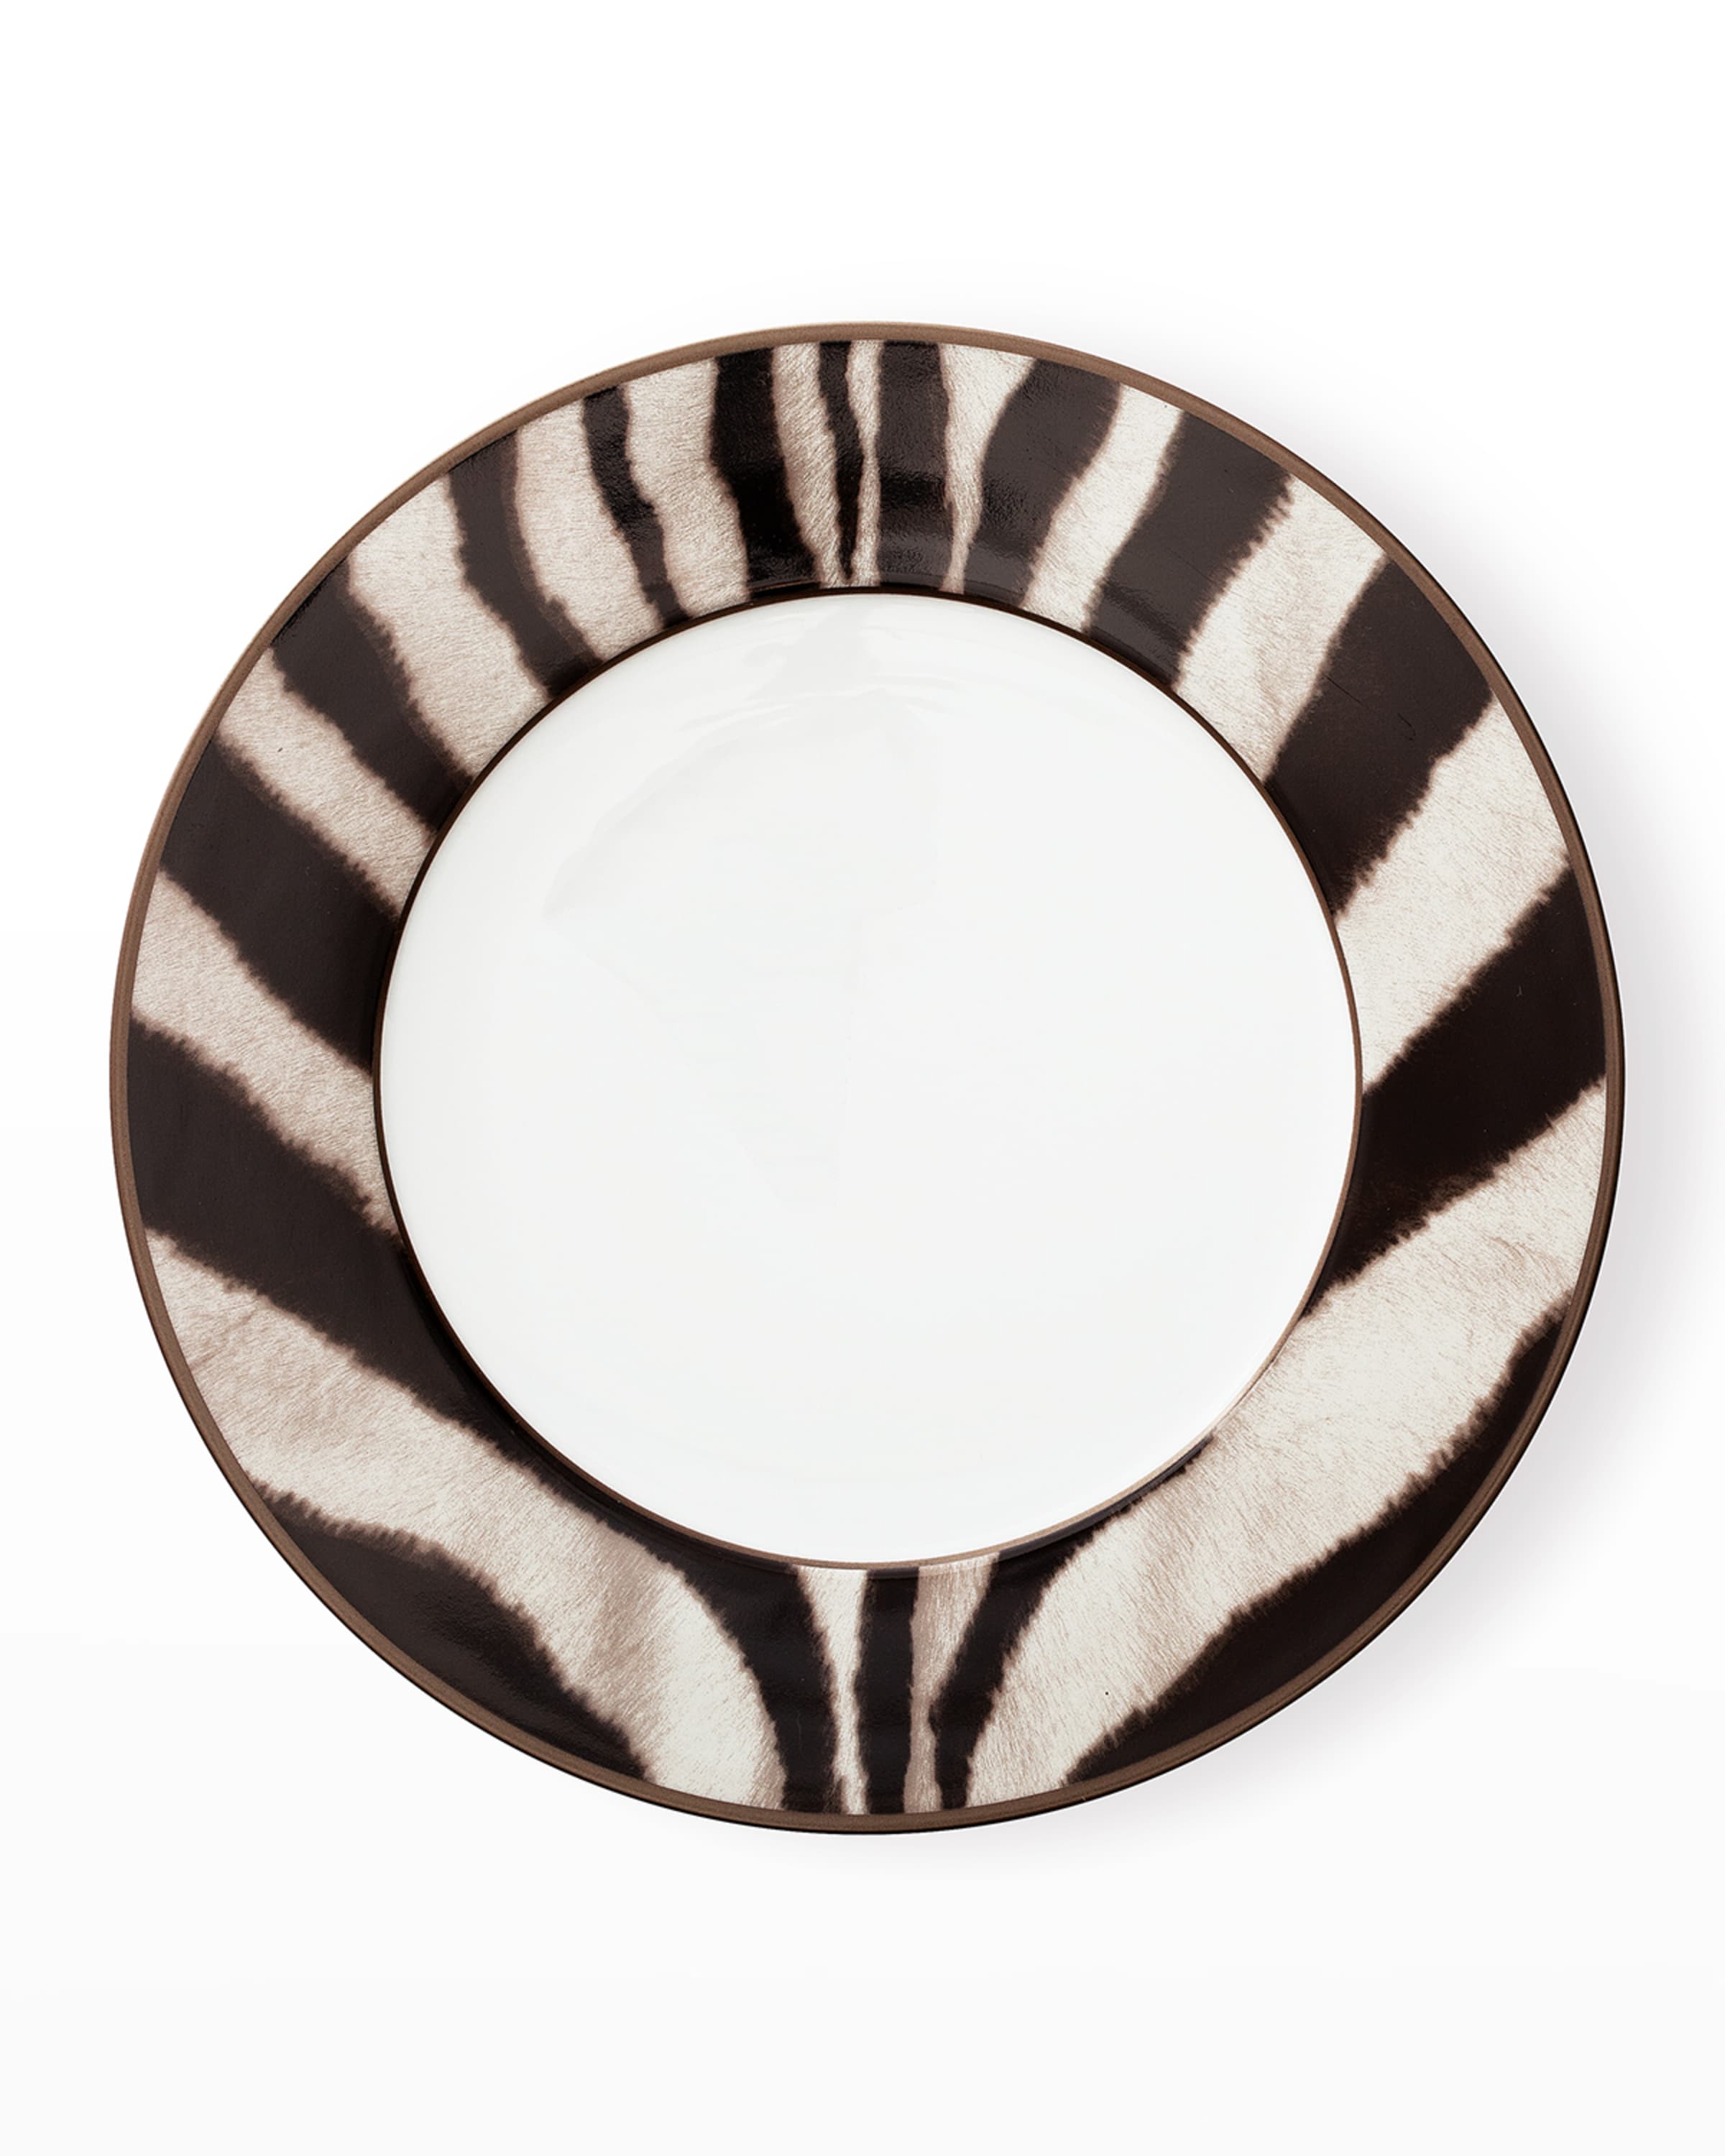 Ralph Lauren Home Kendall Zebra Dinner Plate